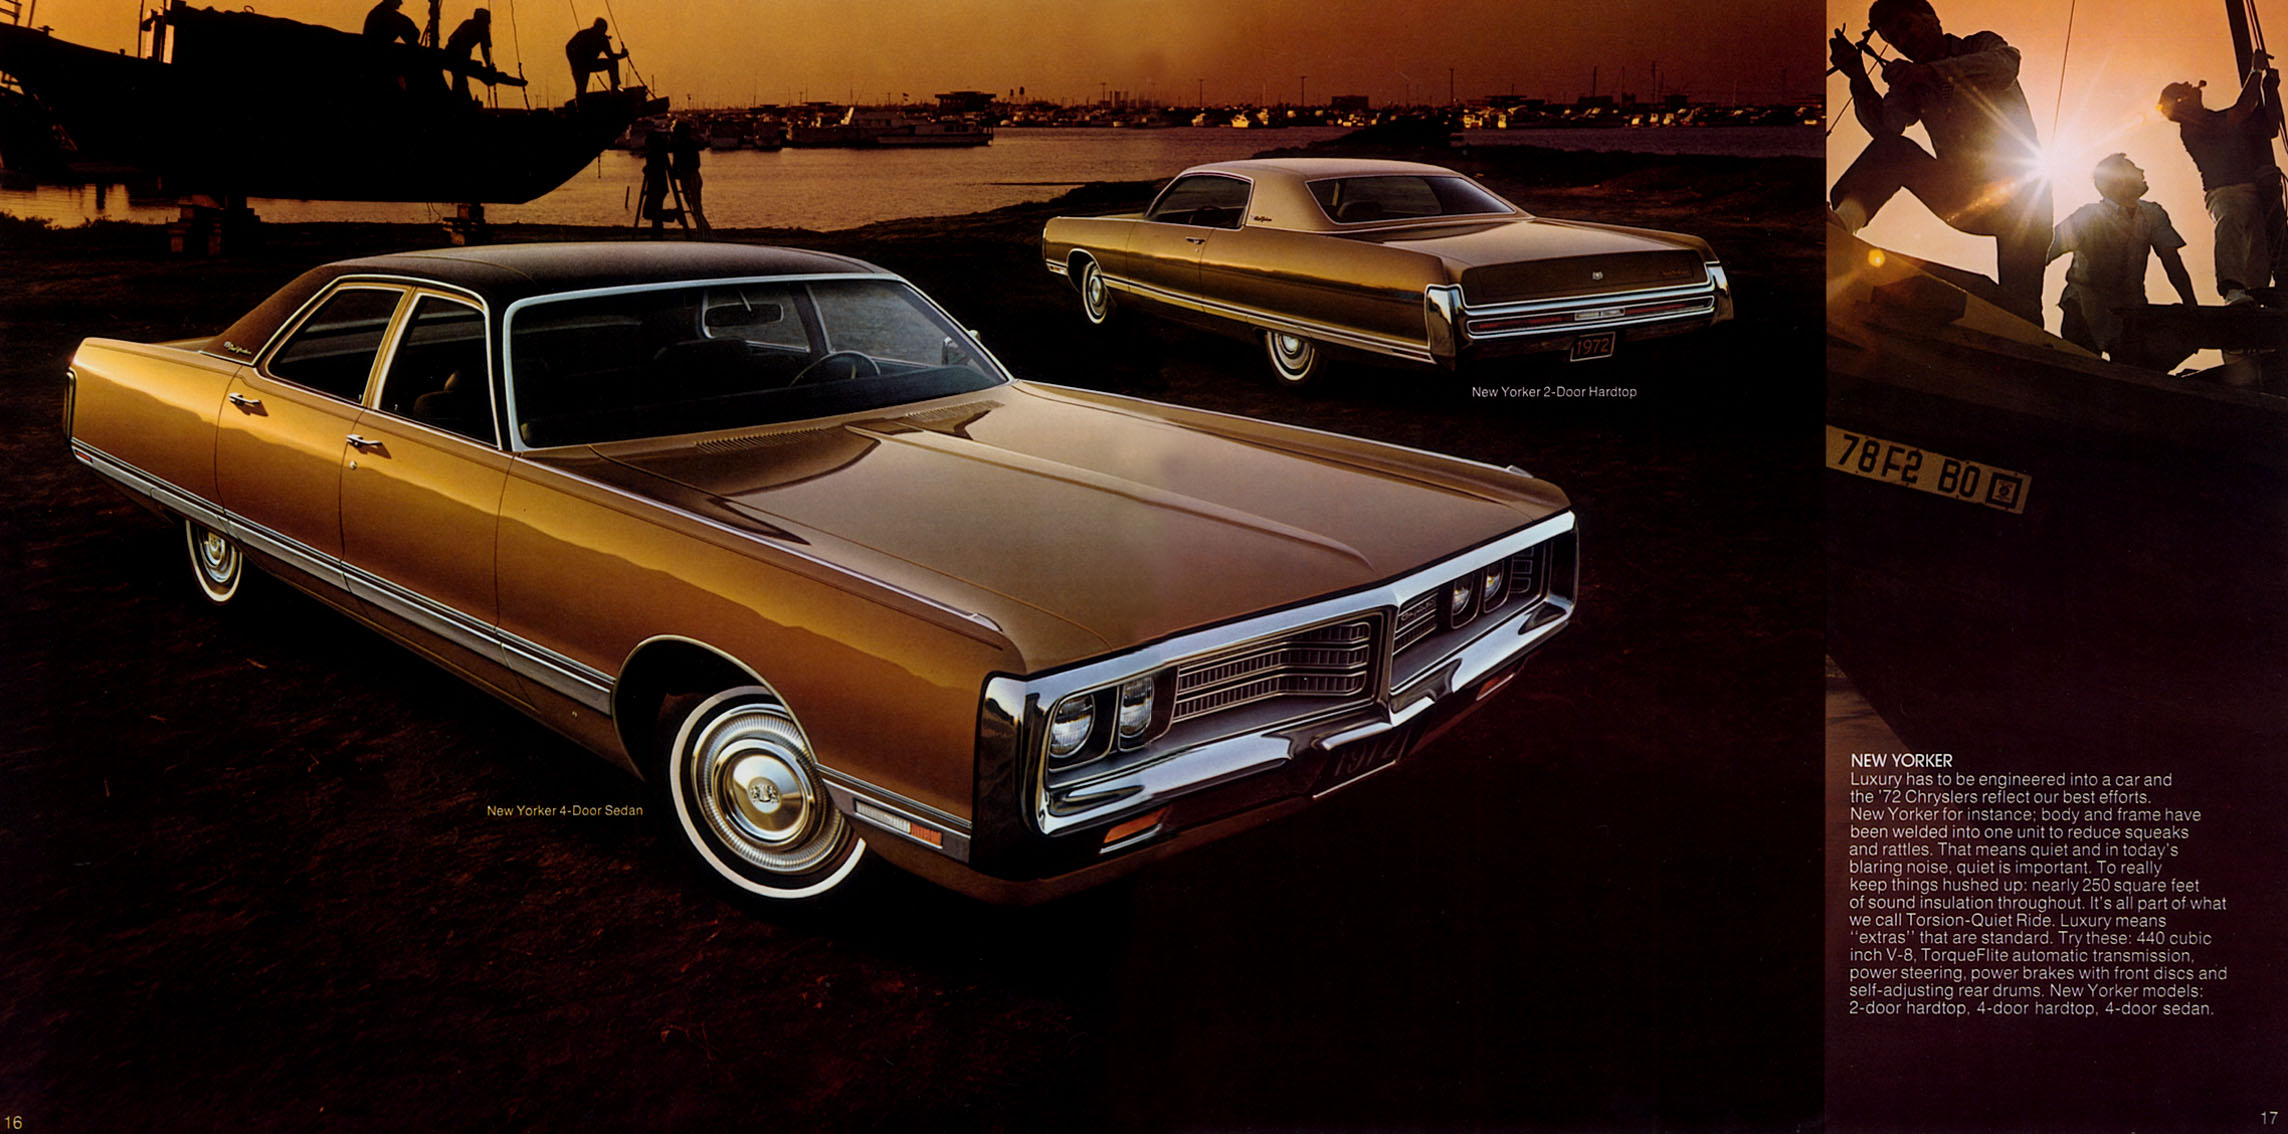 1972 Chrysler Full Line-16-17